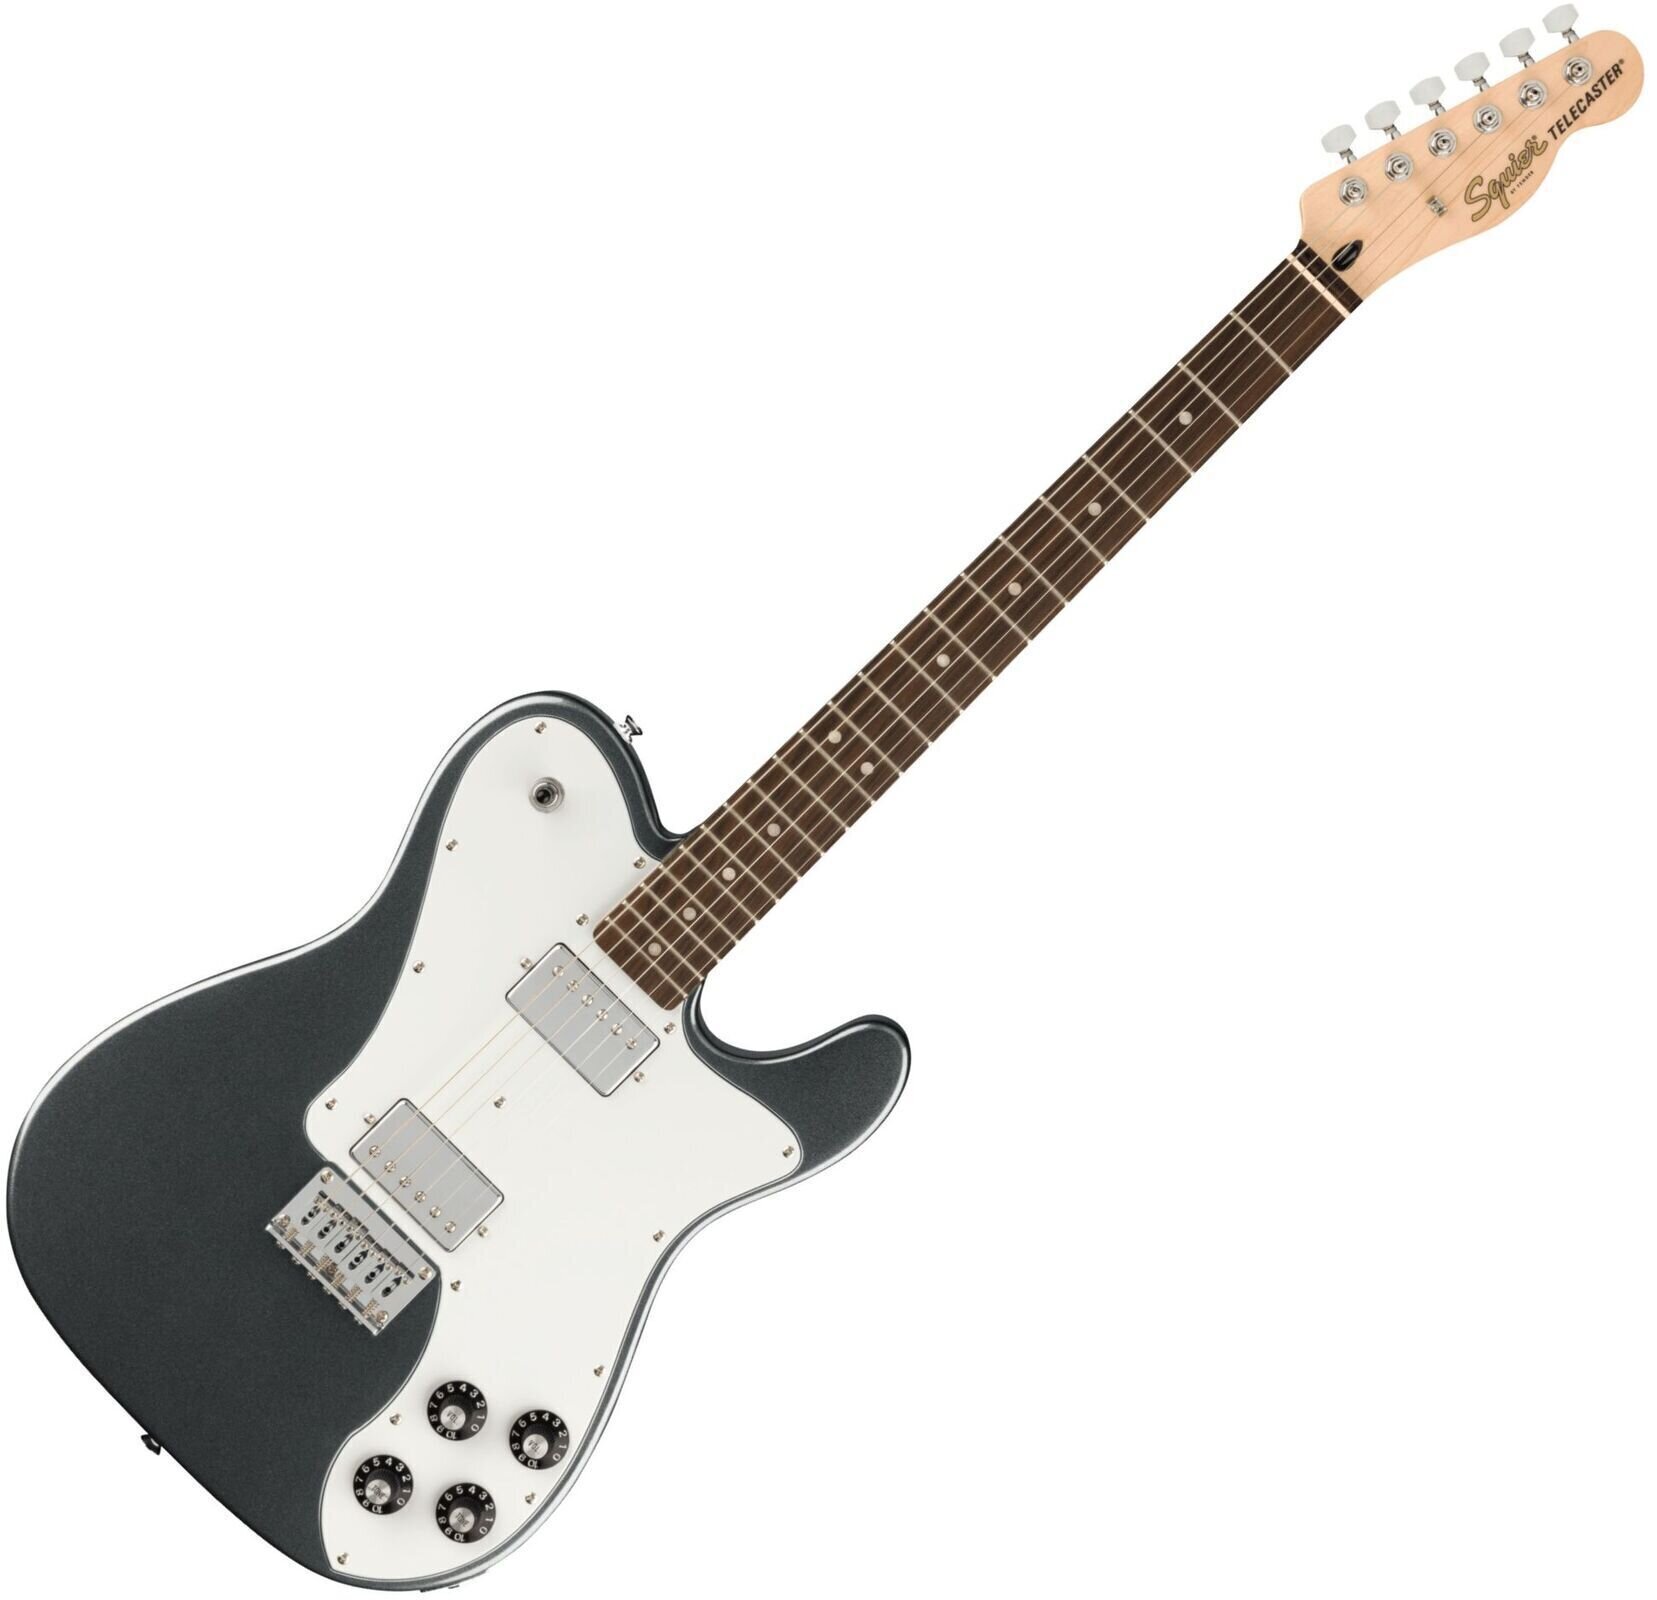 Guitarra elétrica Fender Squier Affinity Series Telecaster Deluxe Charcoal Frost Metallic